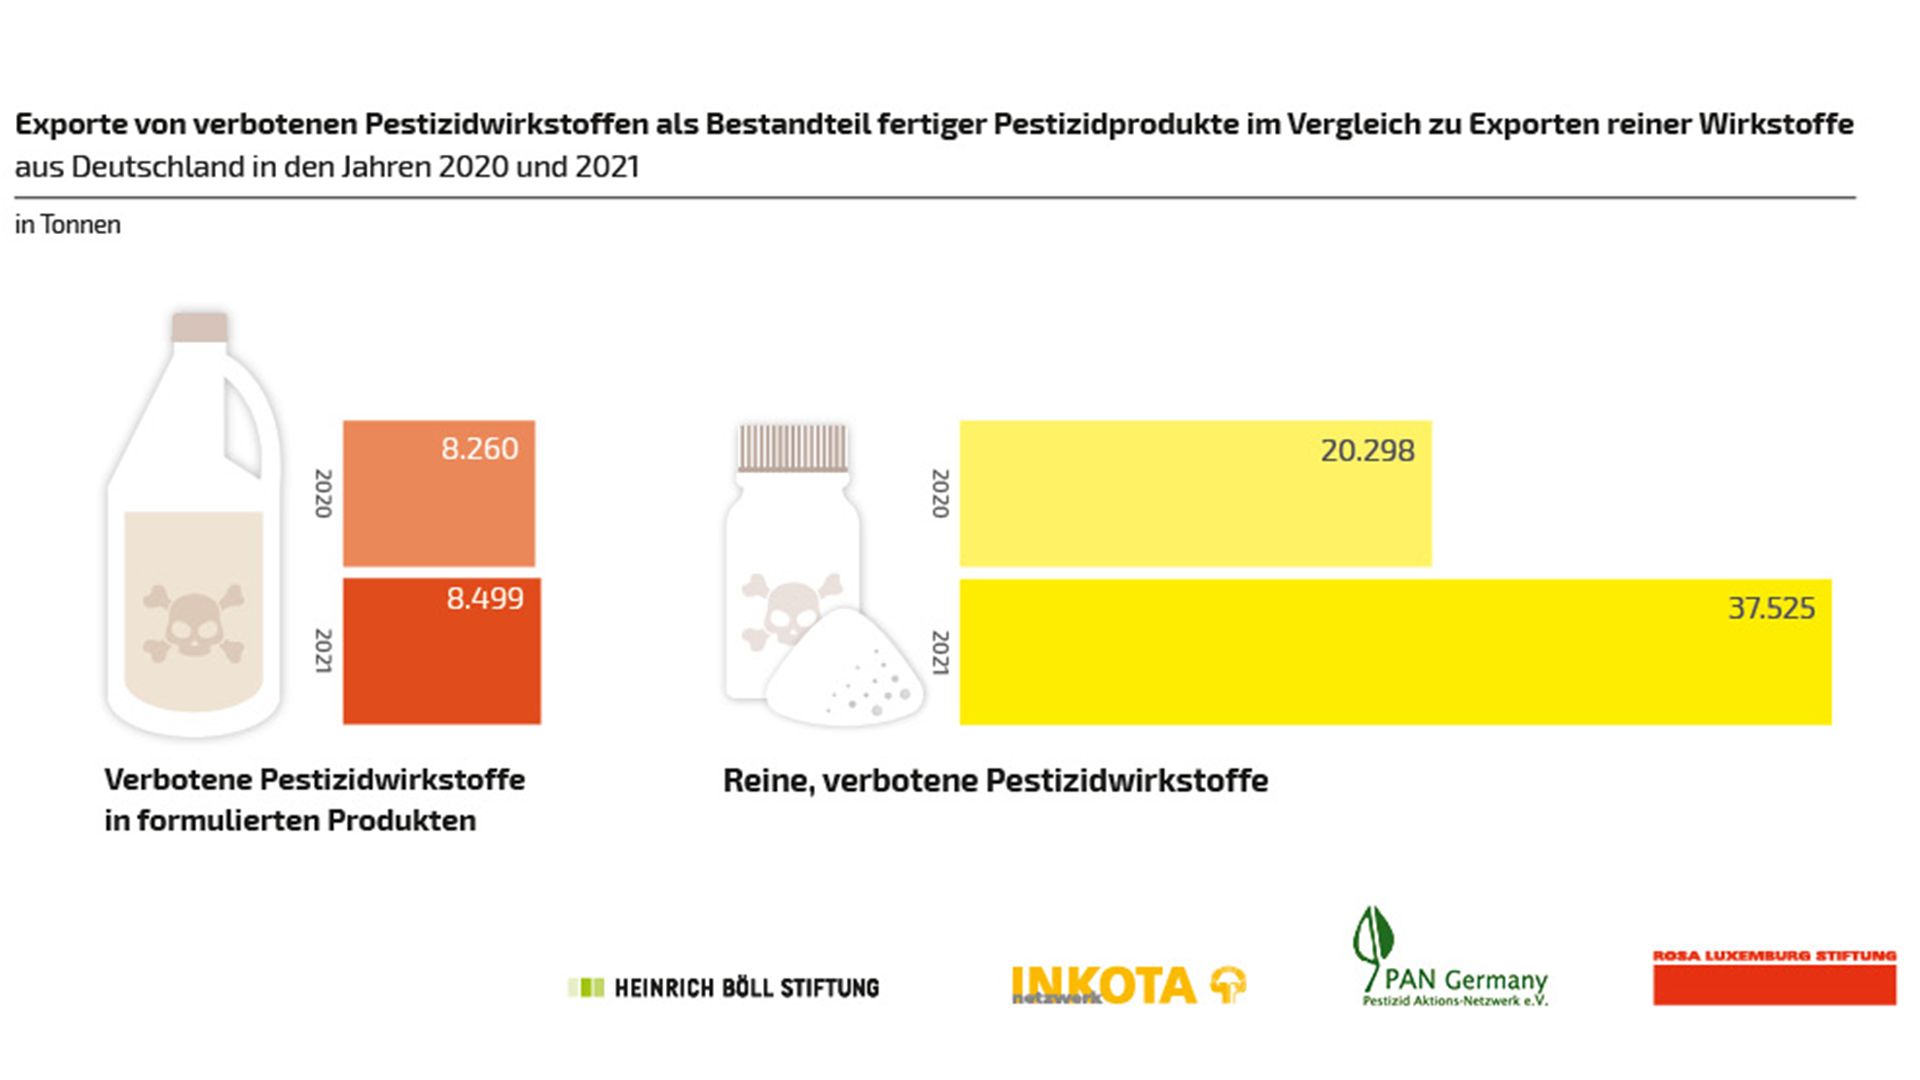 Exporte von verbotenen Pestizidwirkstoffen als Bestandteil fertiger Pestizidprodukte im Vergleich zu Exporten reiner Wikstoffe aus Deutschland in den Jahren 2020 uns 2021 (in Tonnen)